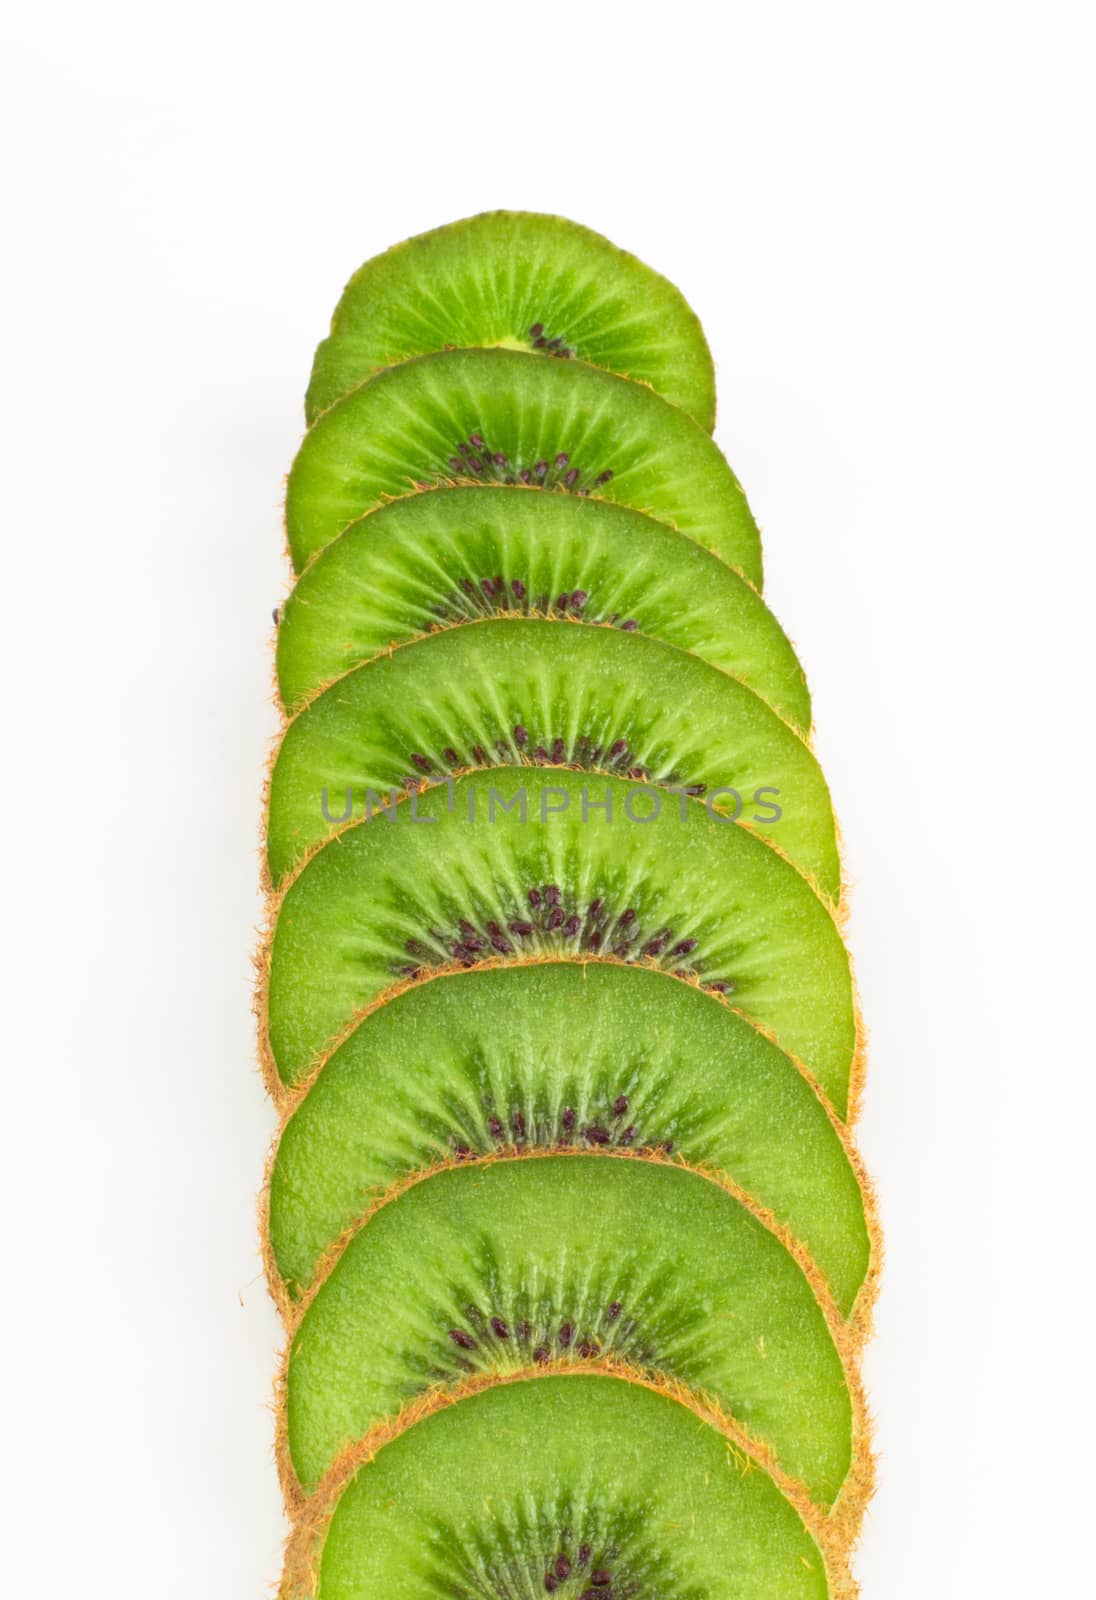 Kiwi slice by ozaiachin